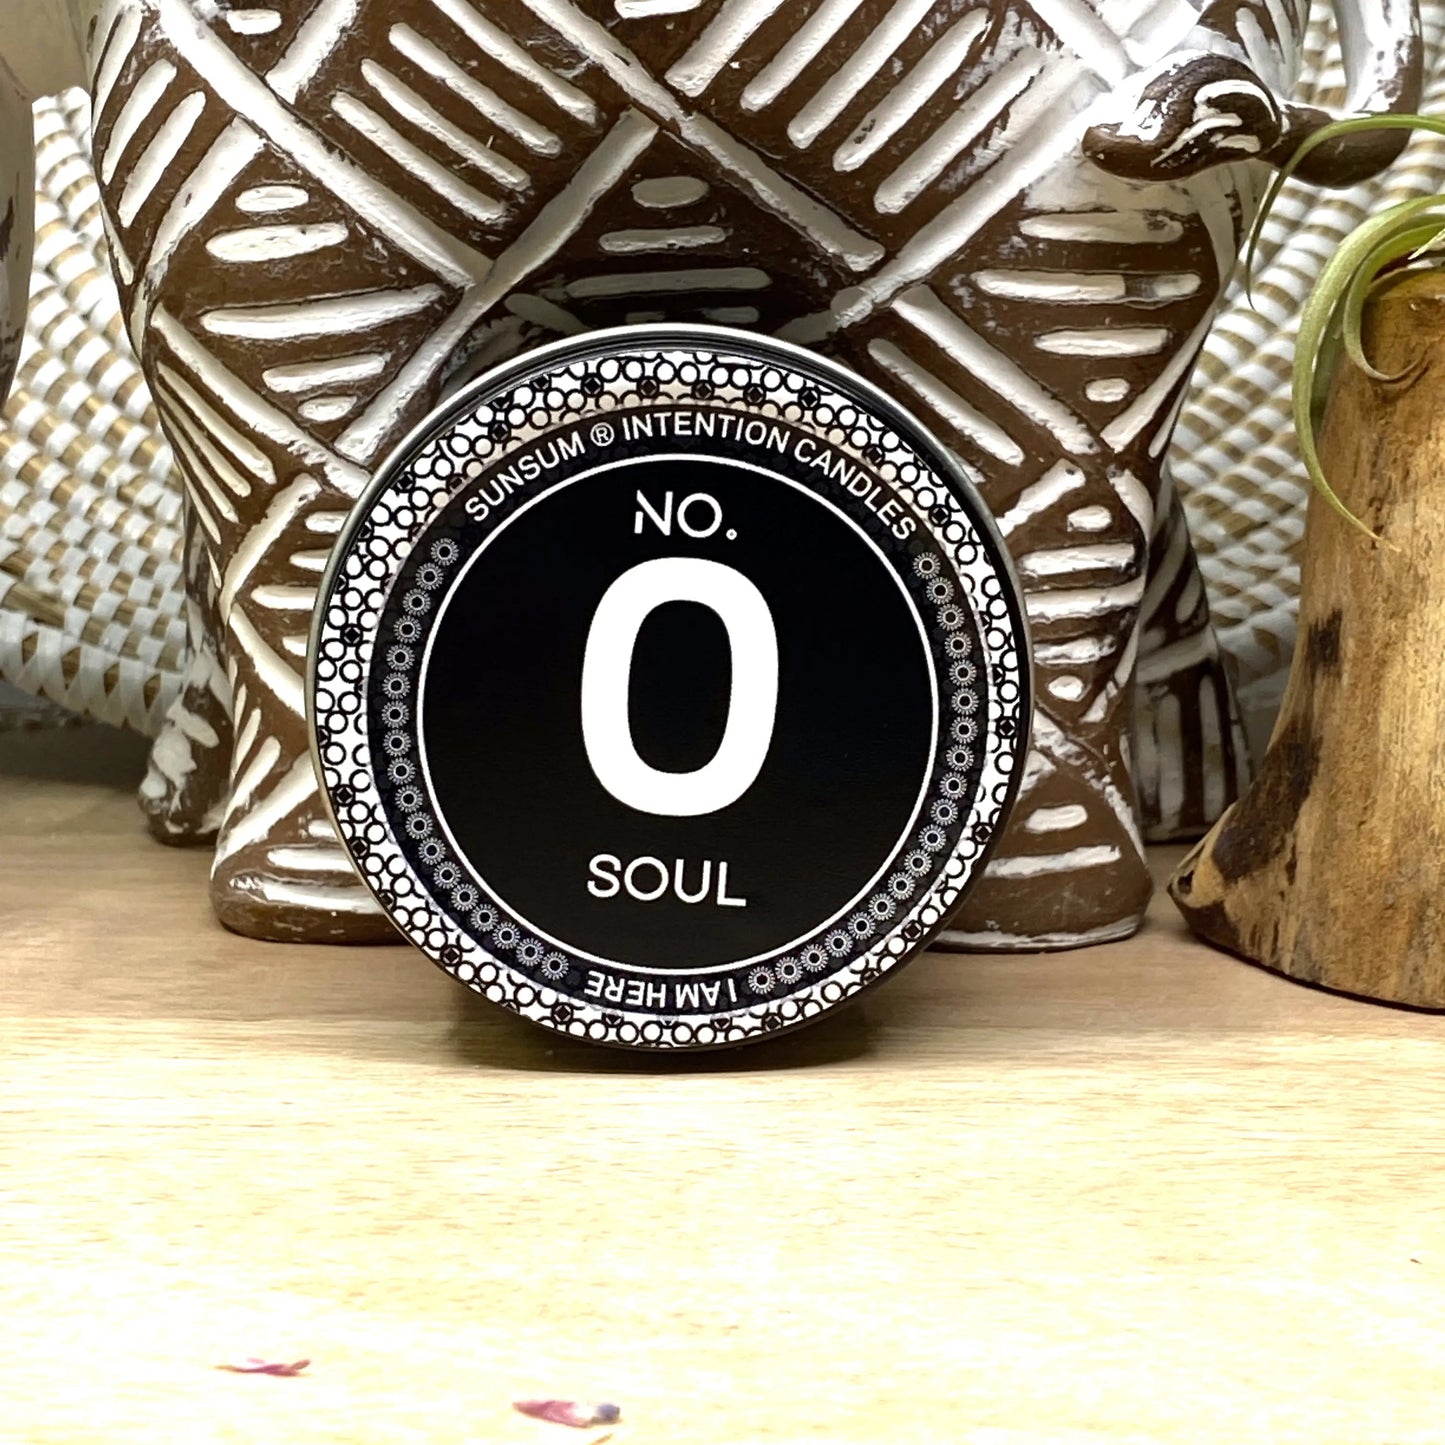 No. 0 - Soul (4 Oz)